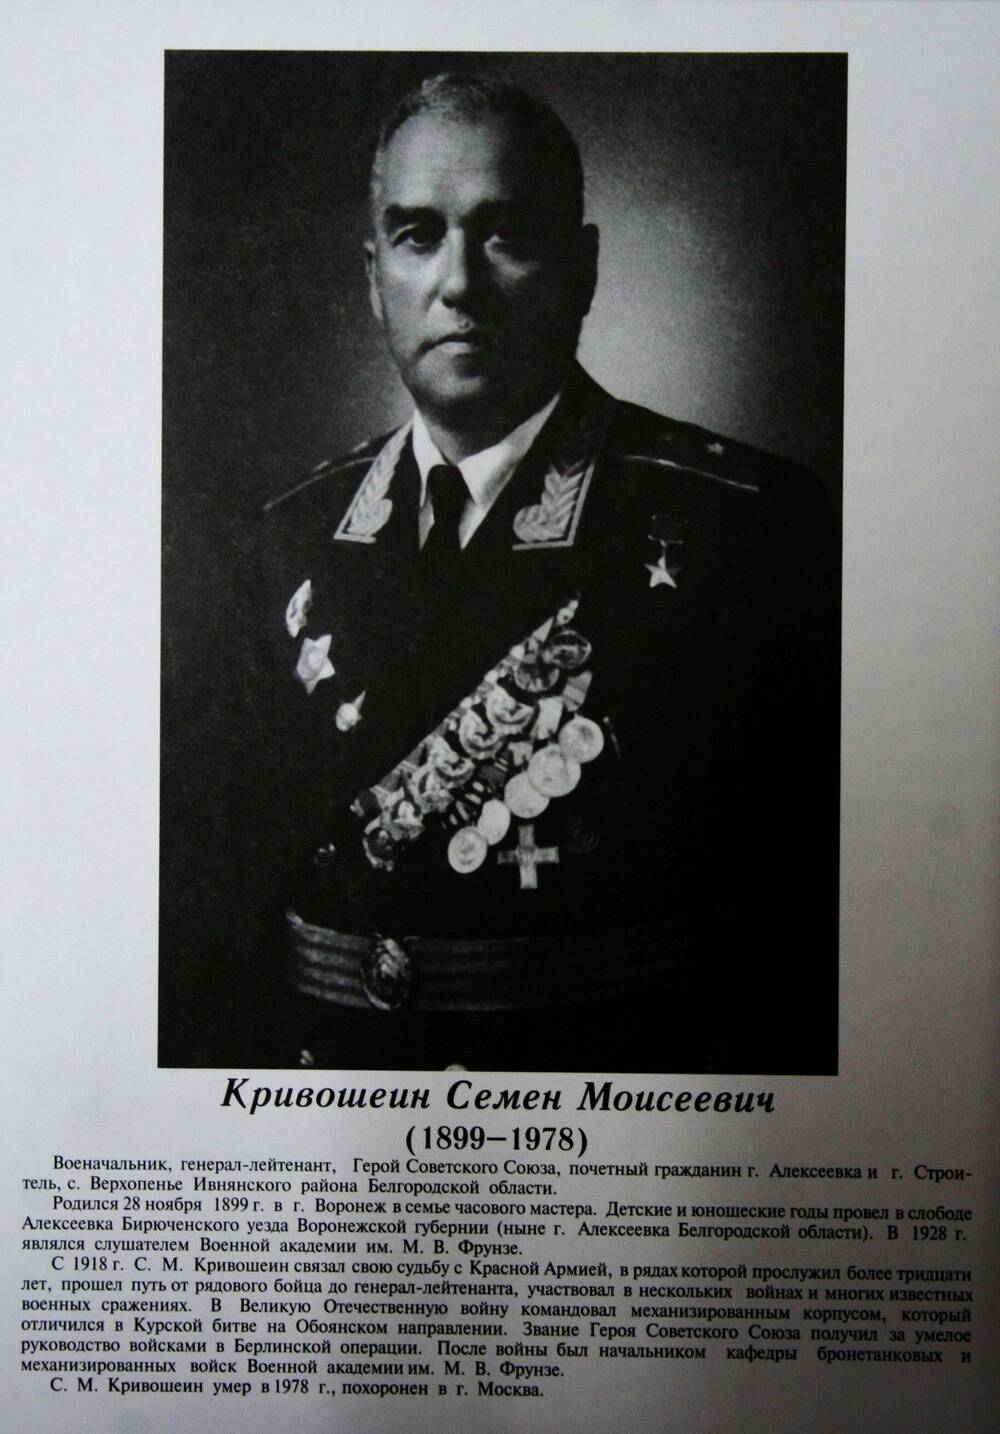 Плакат (фотопортрет) из комплекта Галерея славных имен Белгородчины. Кривошеин Семен Моисеевич (1899-1978).